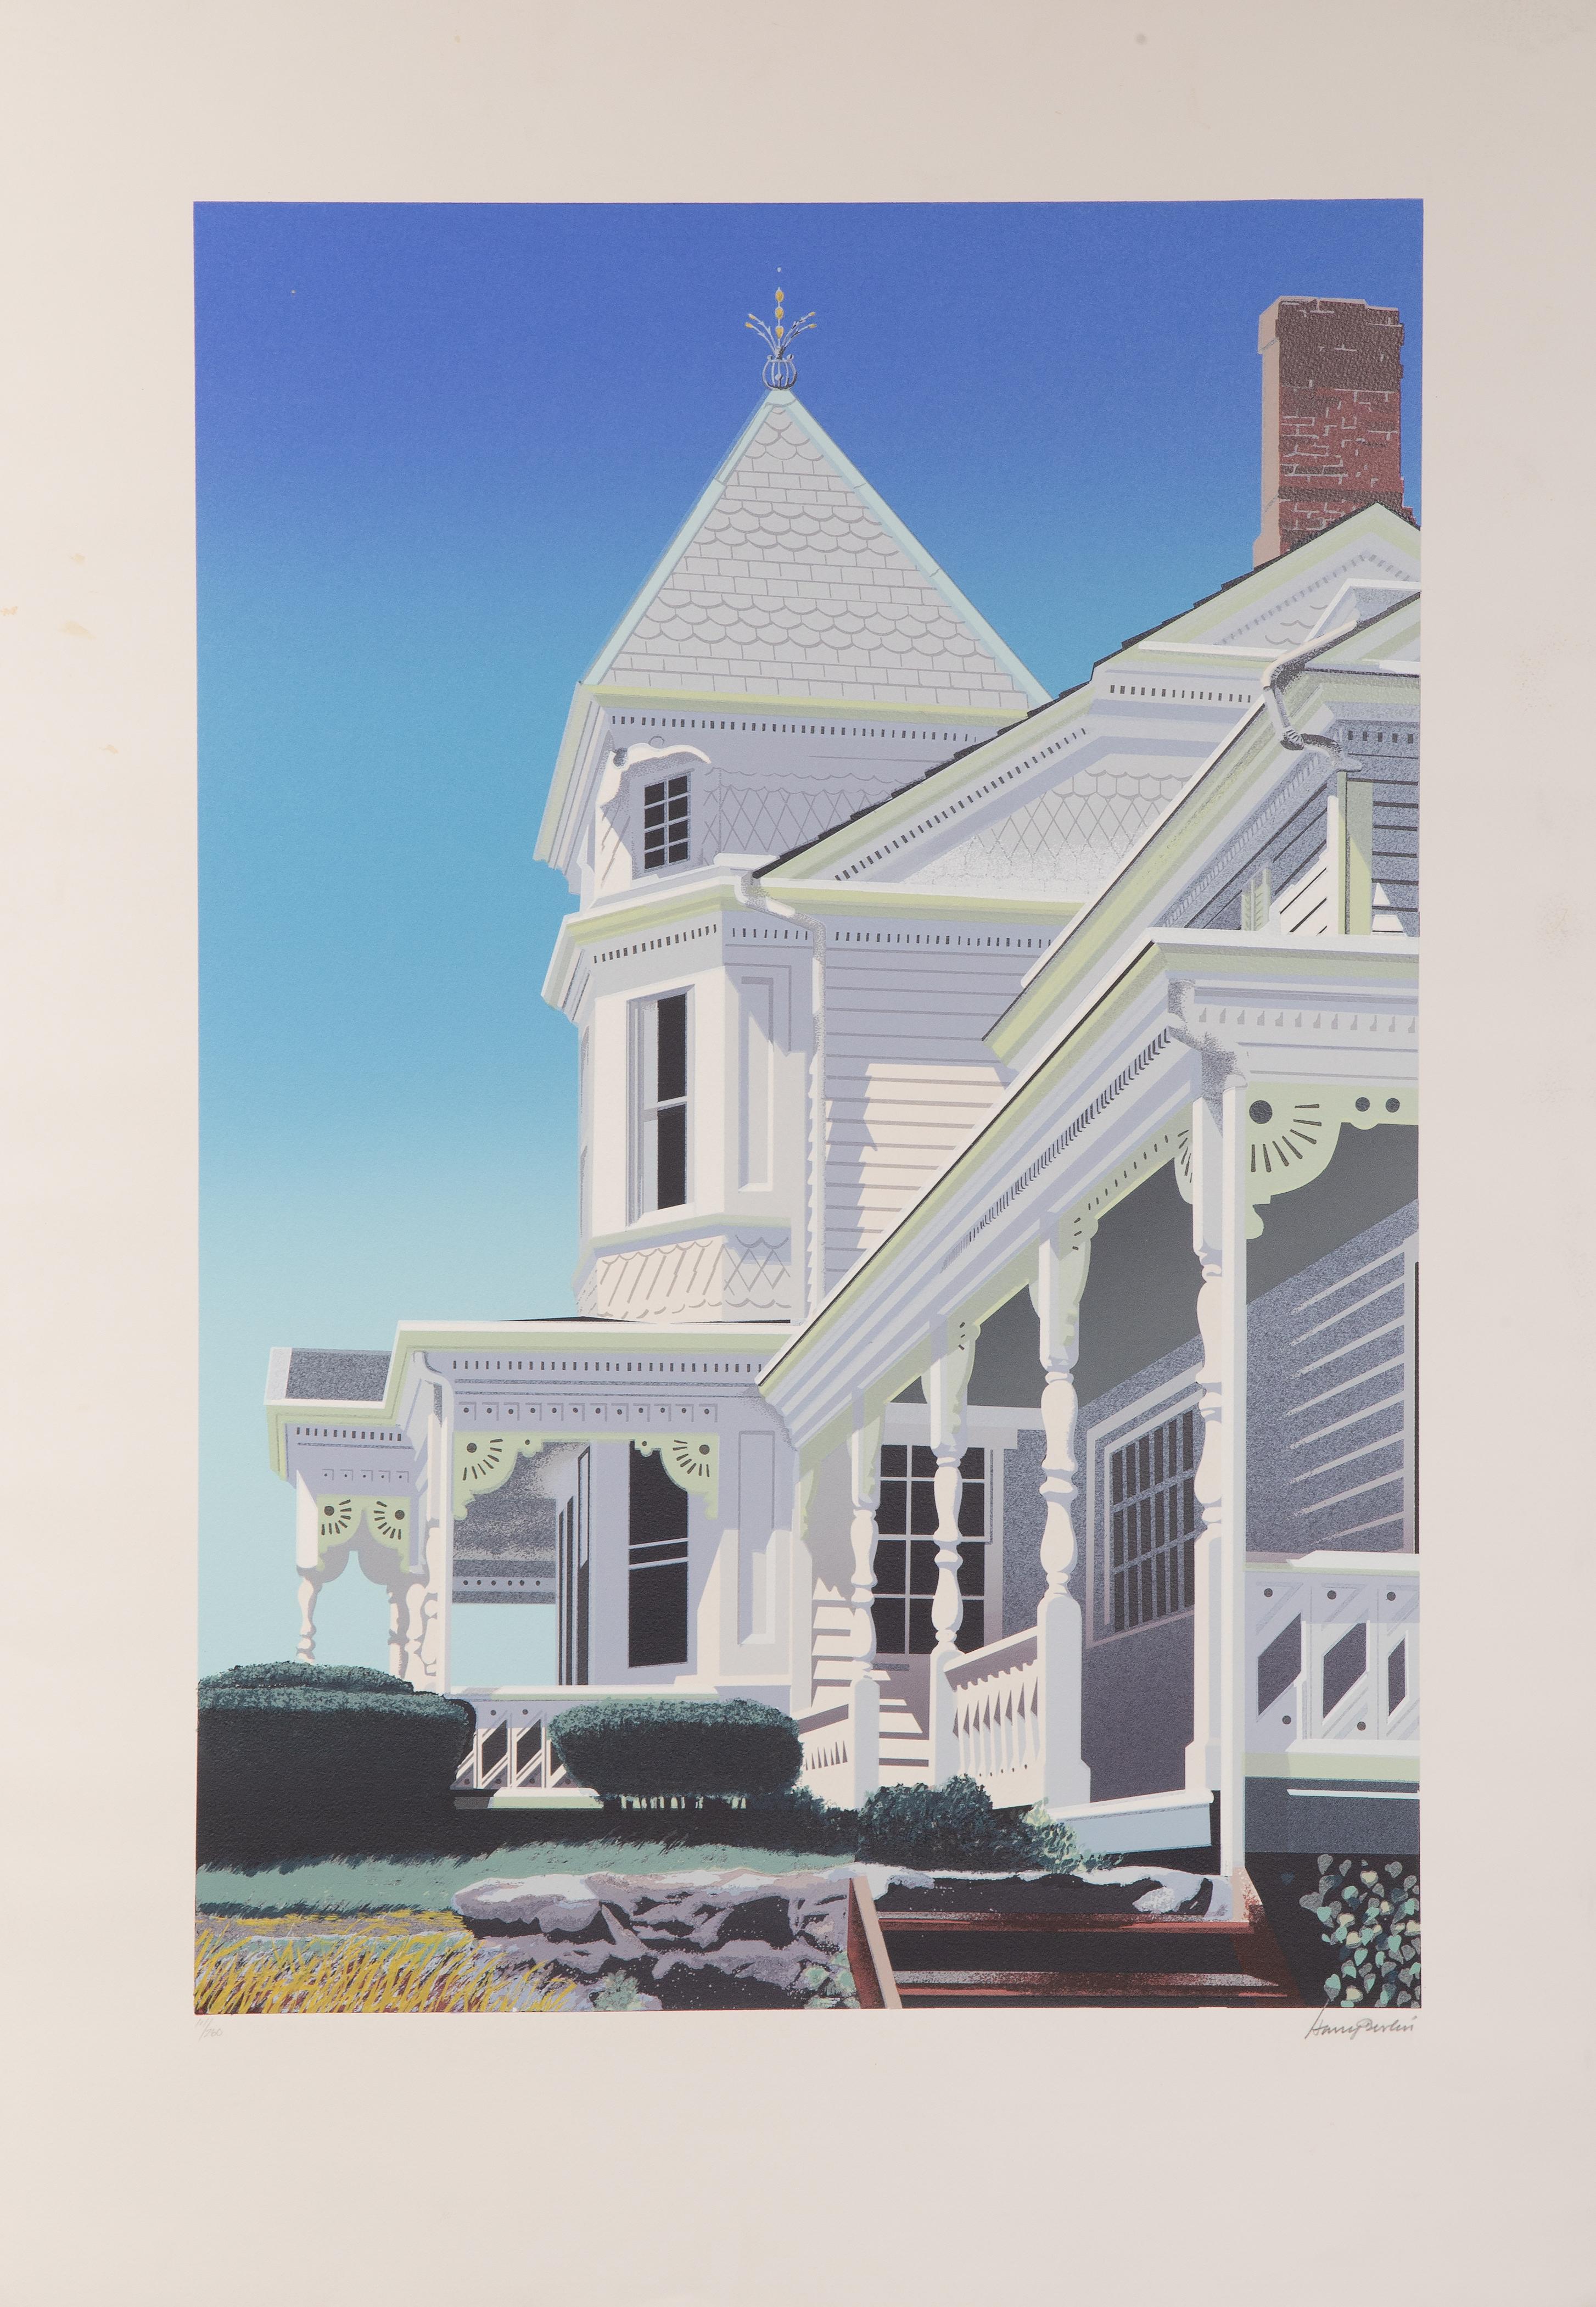 Viktorianische Hausfassade
Harry Devlin, Amerikaner (1918-2001)
Lithographie auf Arches, signiert und nummeriert mit Bleistift
Auflage von 111/260
Bildgröße: 32 x 22 Zoll
Größe: 41,5 x 29,5 Zoll (105,41 x 74,93 cm)